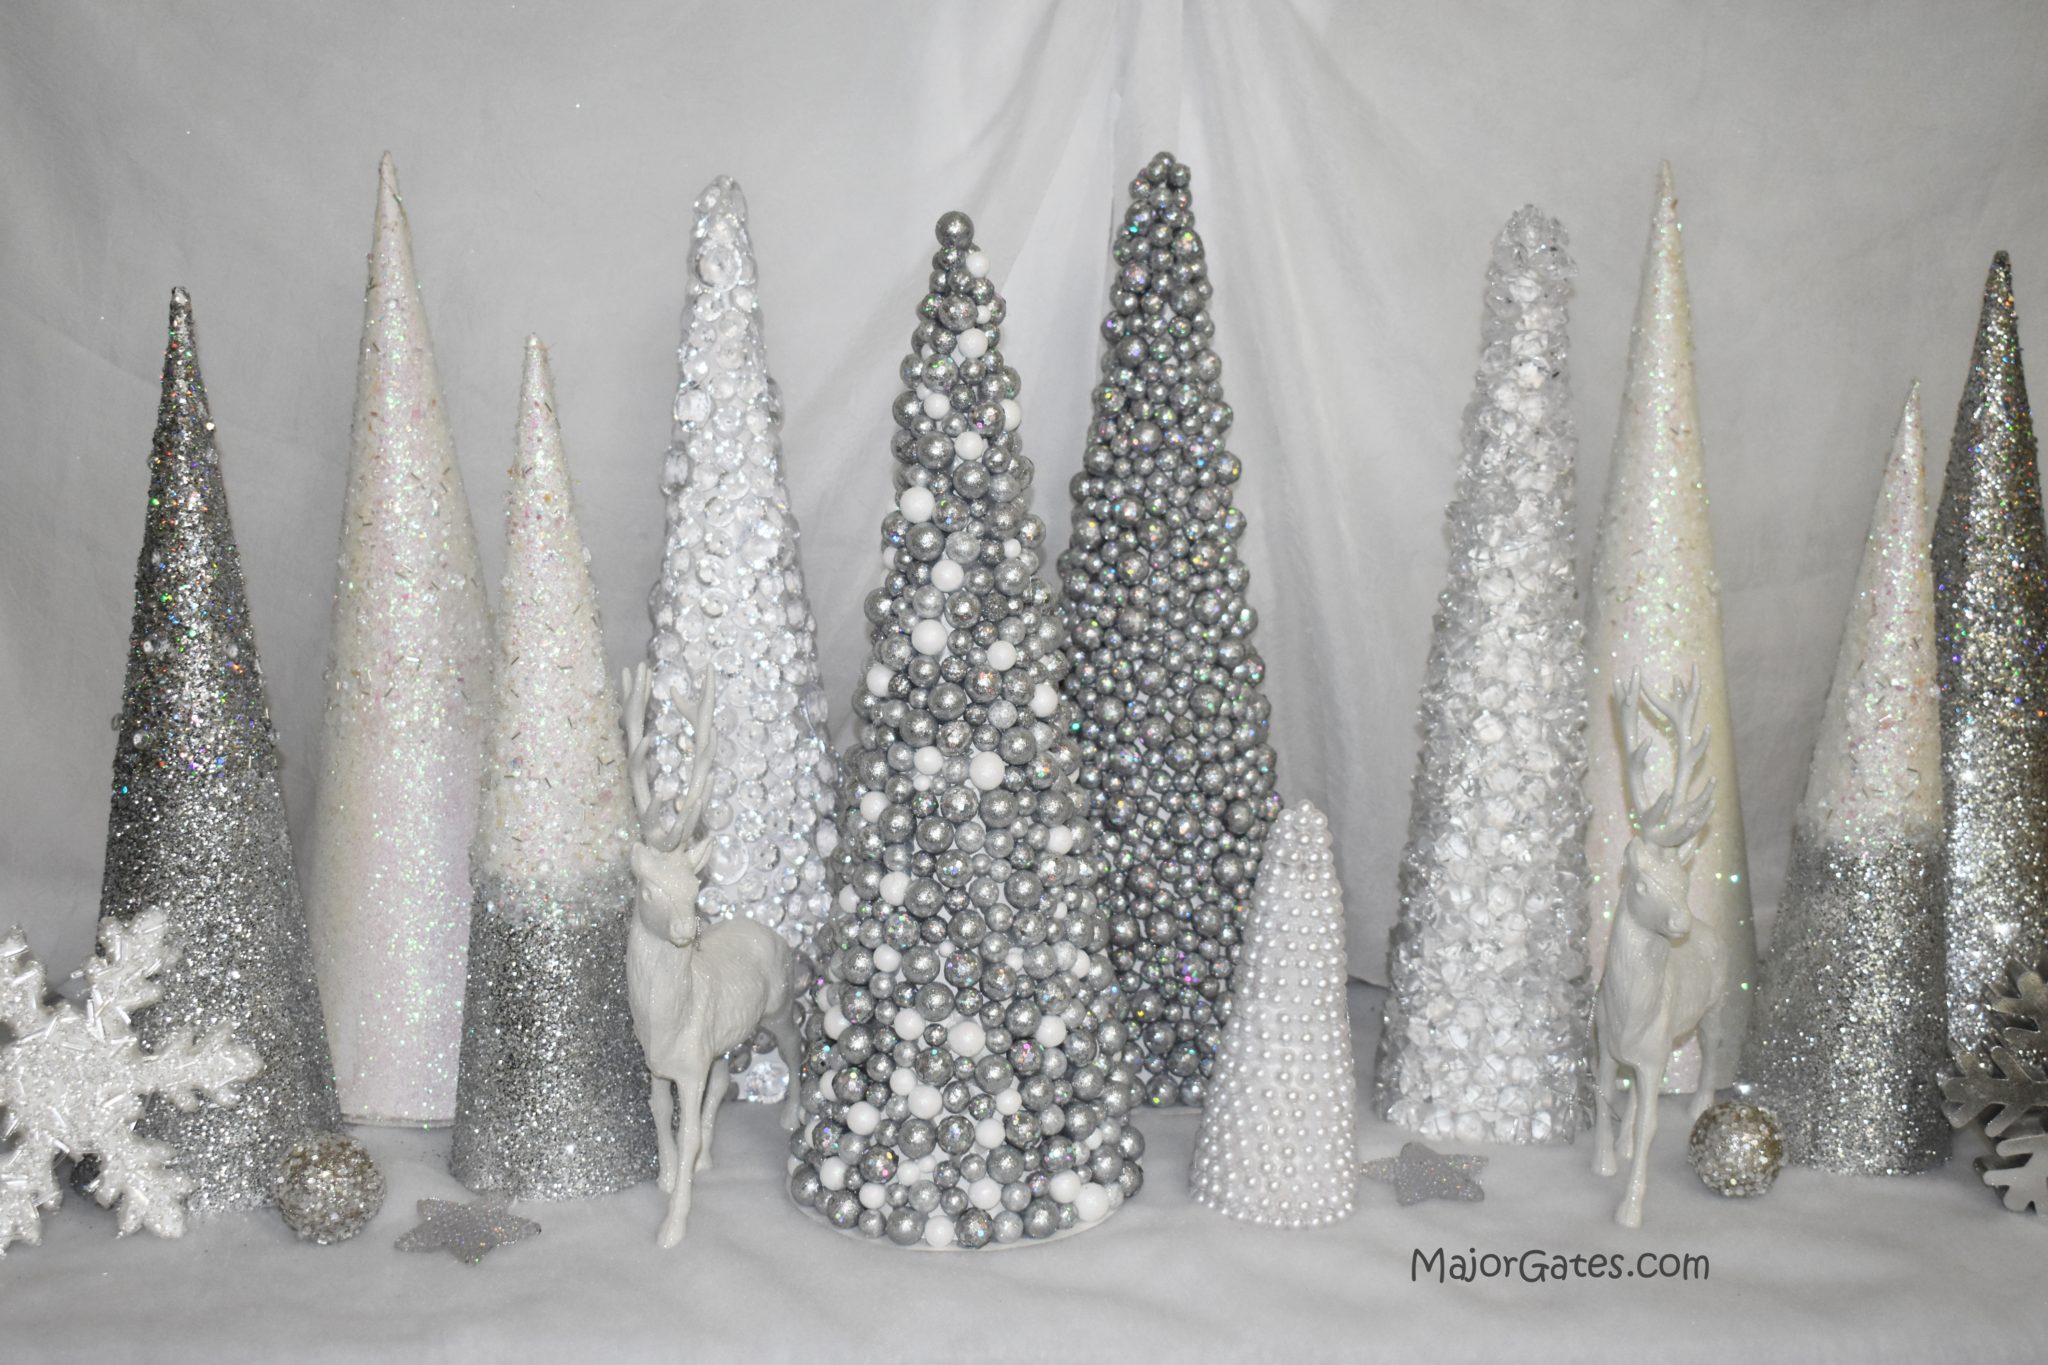 Christmas Polystyrene Cone Flat Foam Cone For Handmade Craft DIY